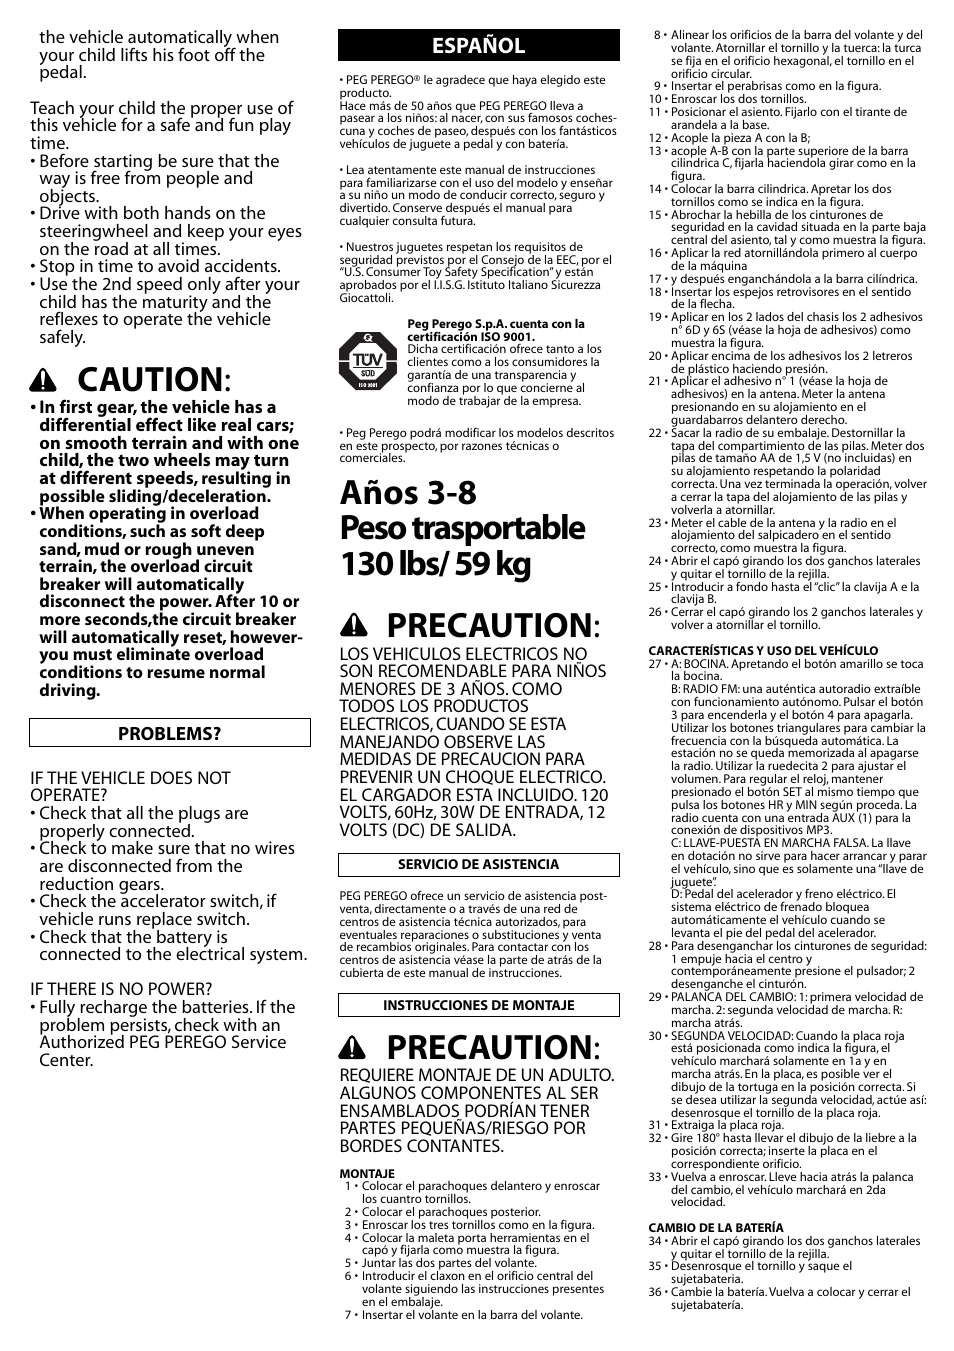 Caution, Precaution, Español | Peg-Perego Gaucho Rocin User Manual | Page 9  / 16 | Original mode